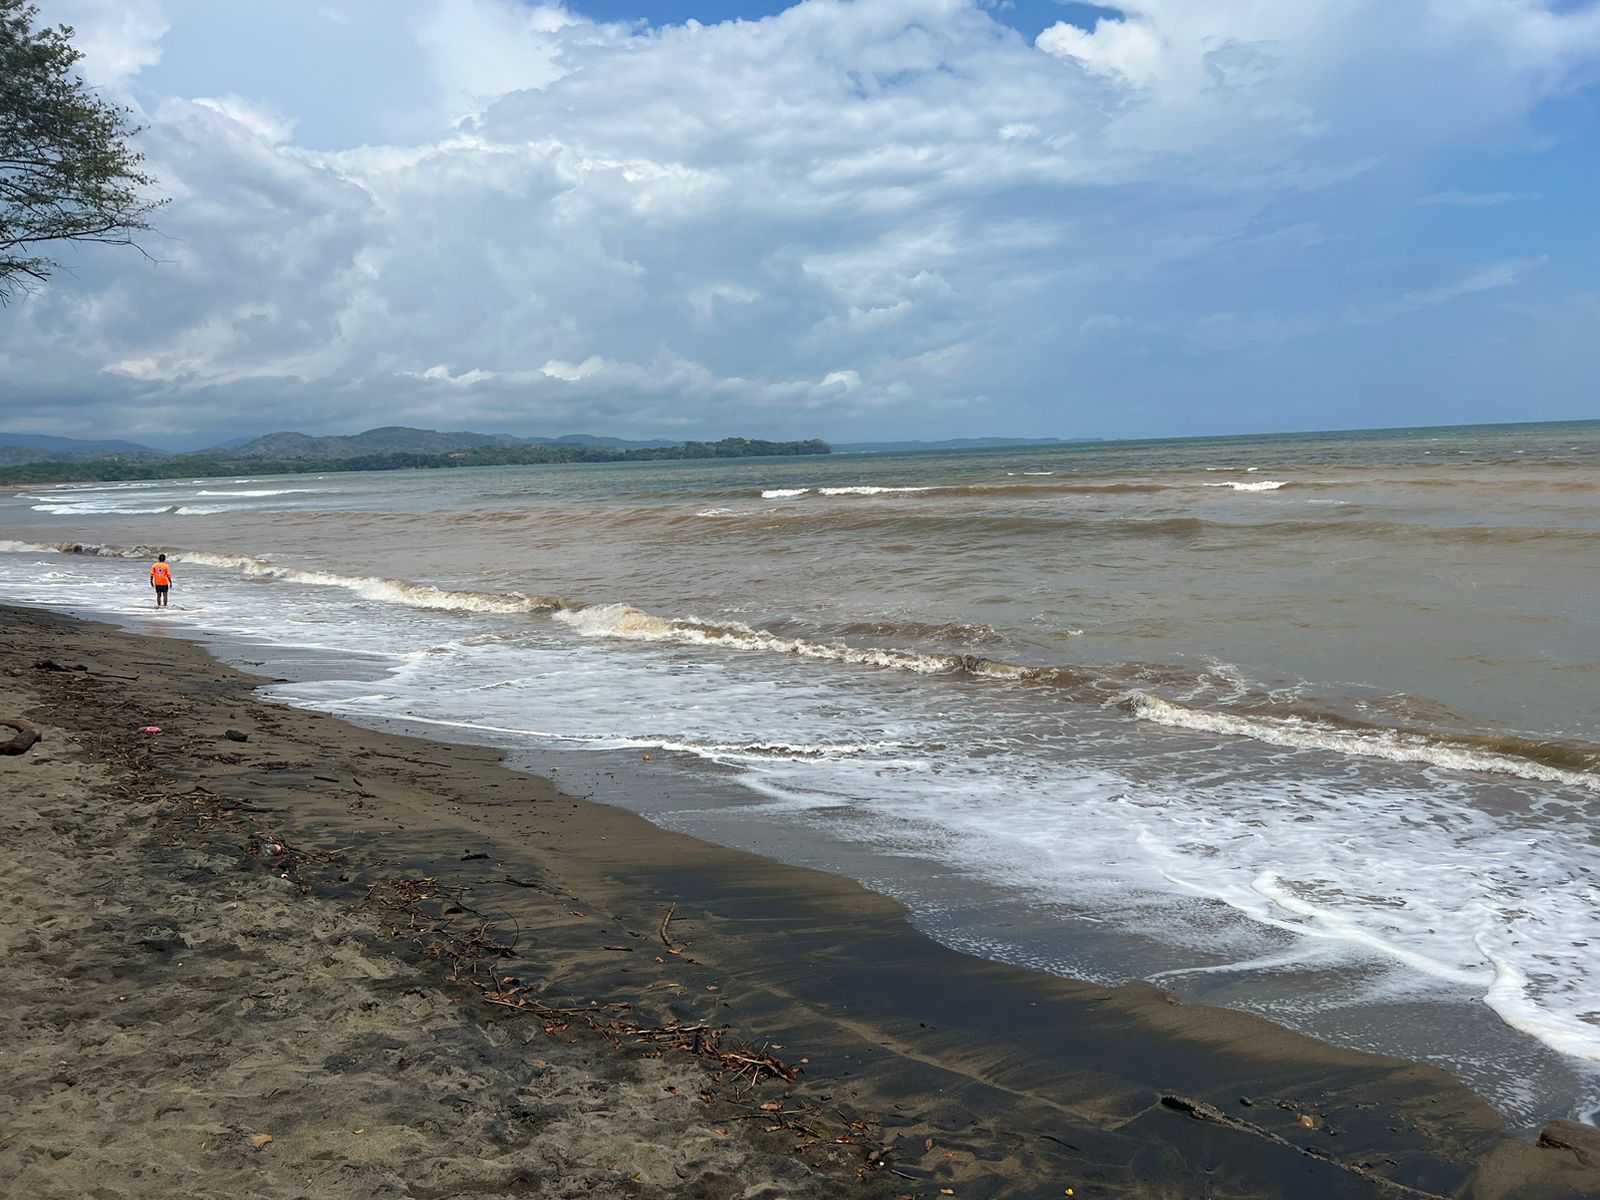 Reiteran aviso de prevención por mareas altas en el Pacífico panameño